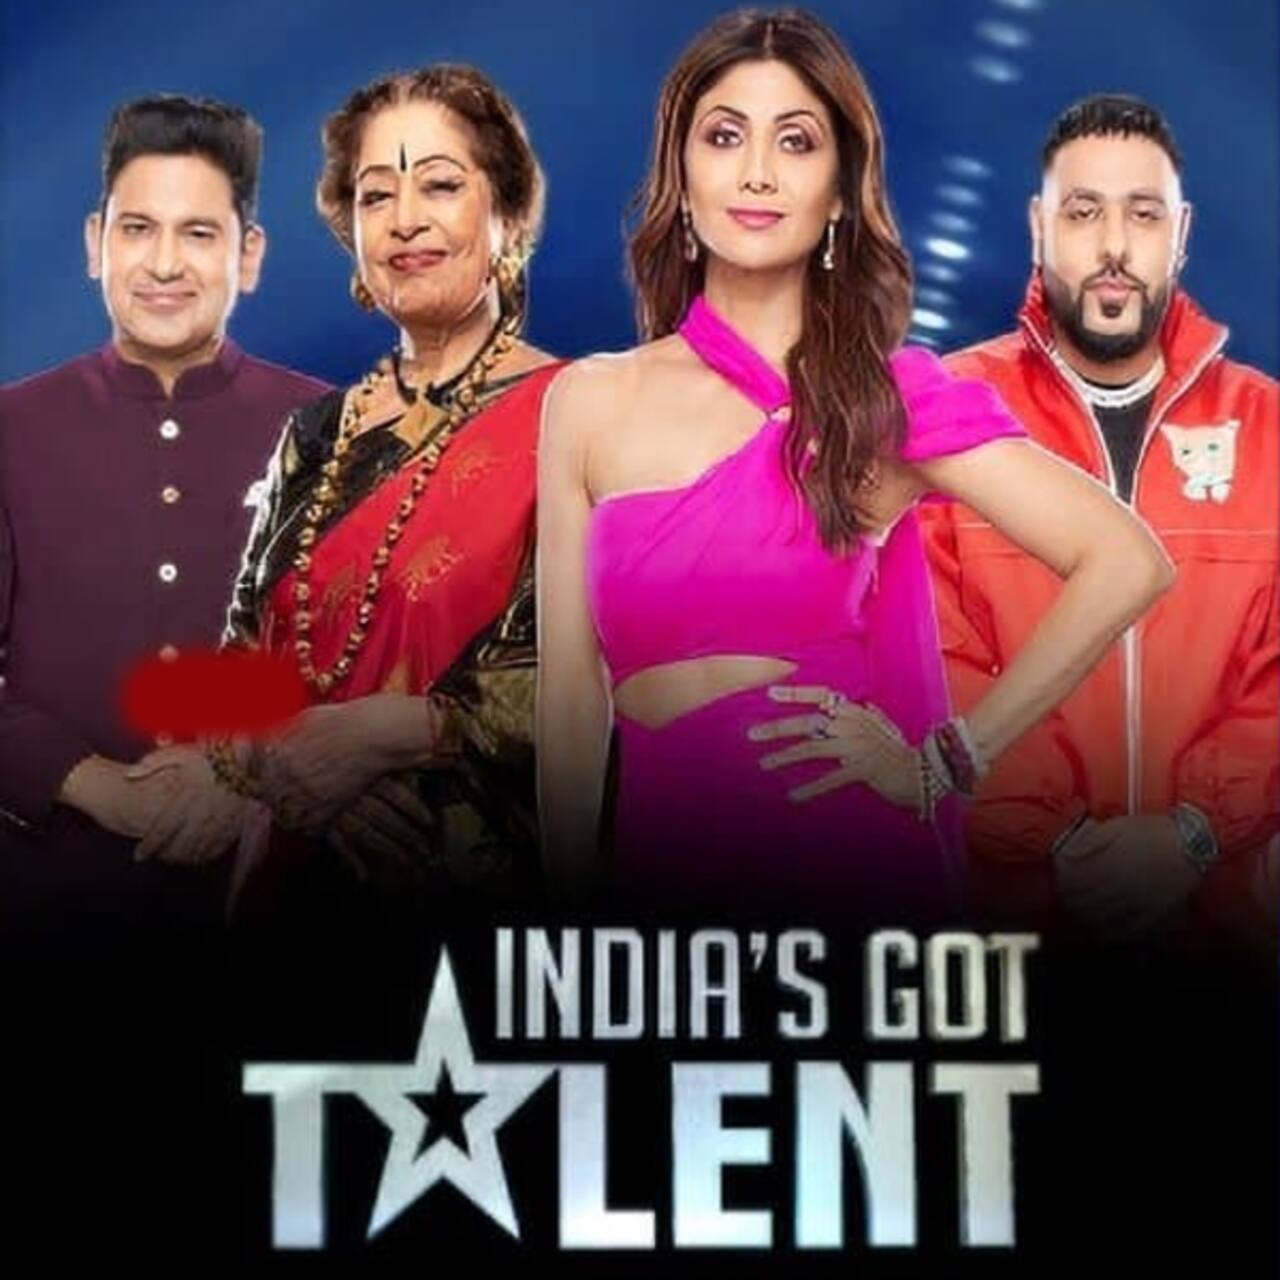 इंडियाज गॉट टैलेंज (India's Got Talent)